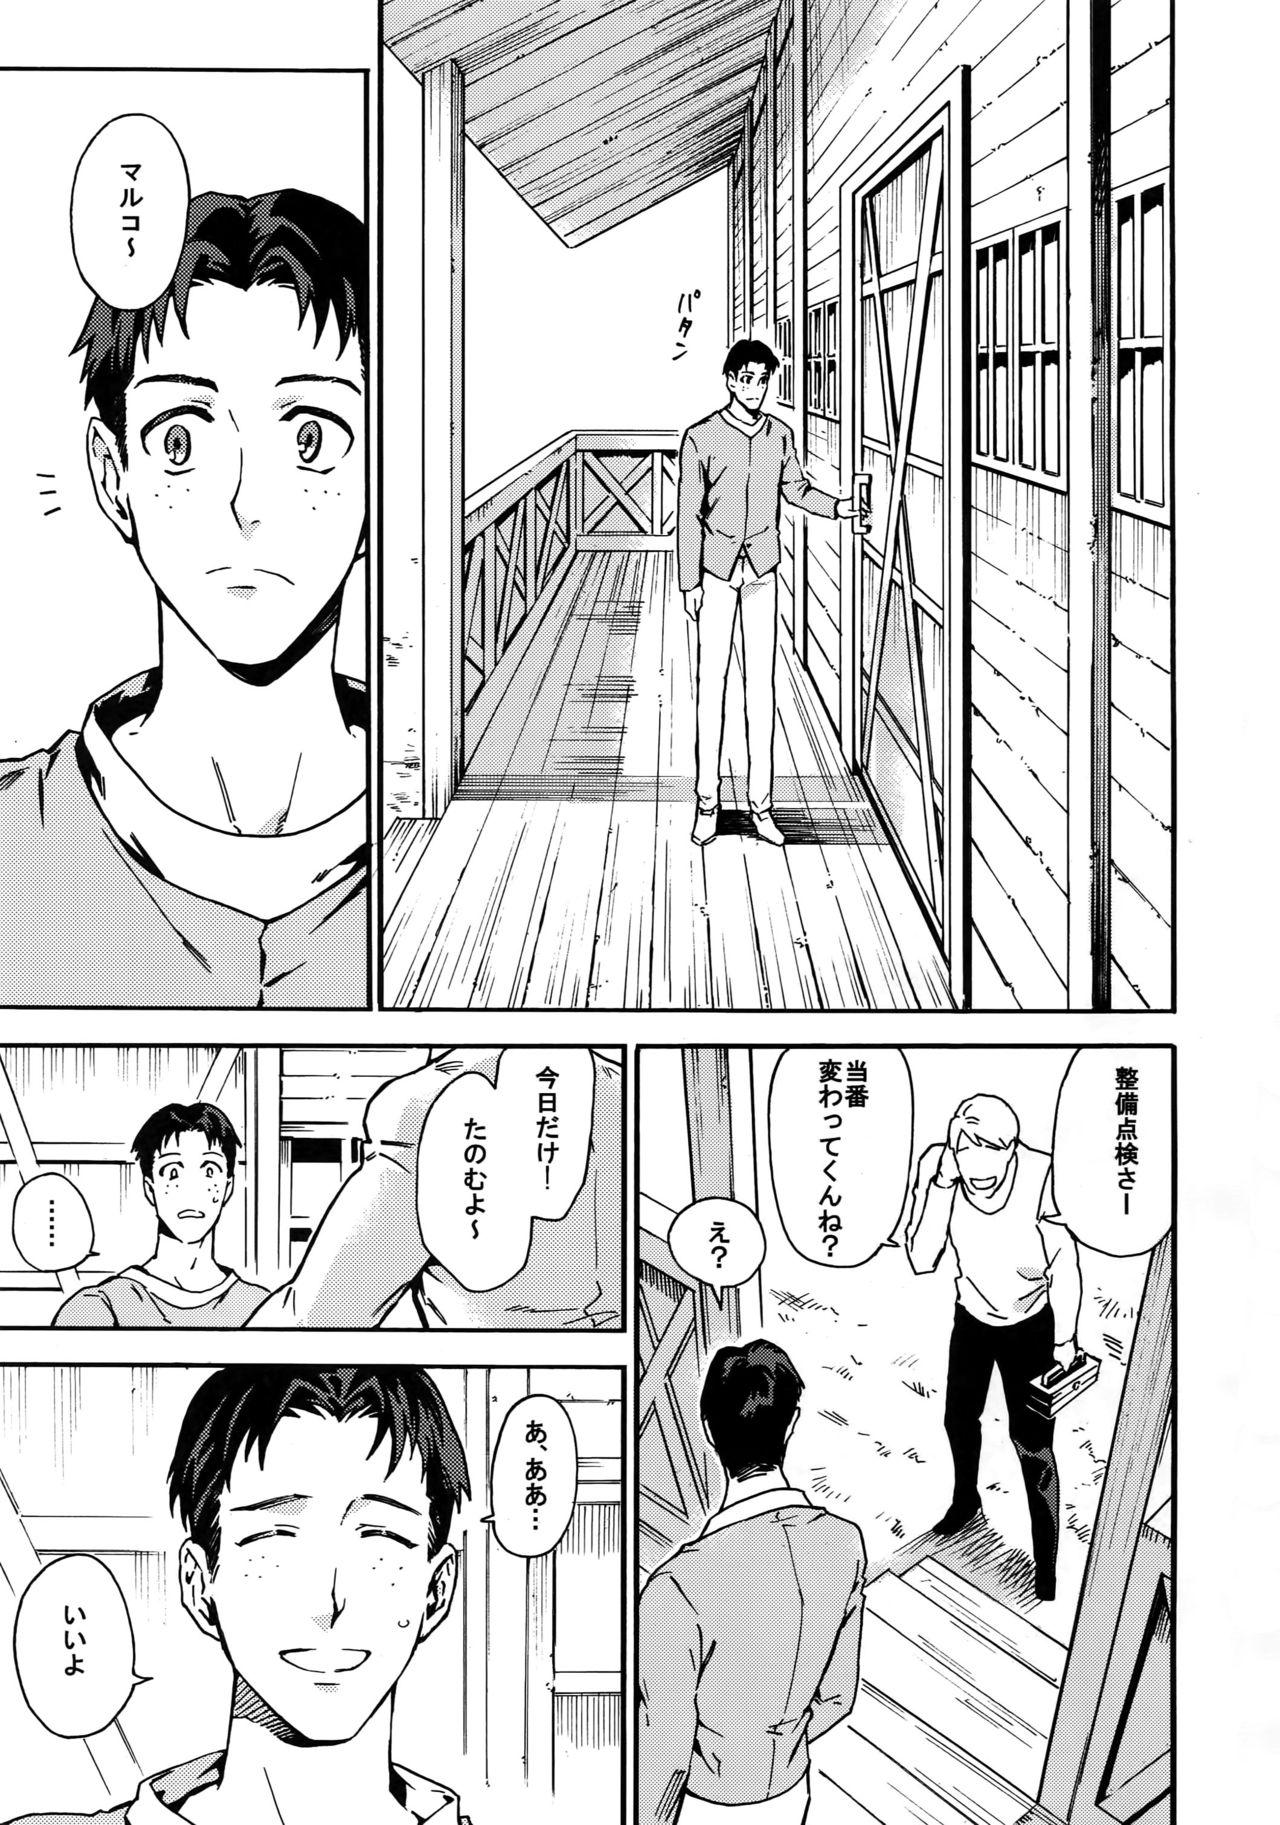 Camshow Koufuku Paradox - Shingeki no kyojin Transsexual - Page 2